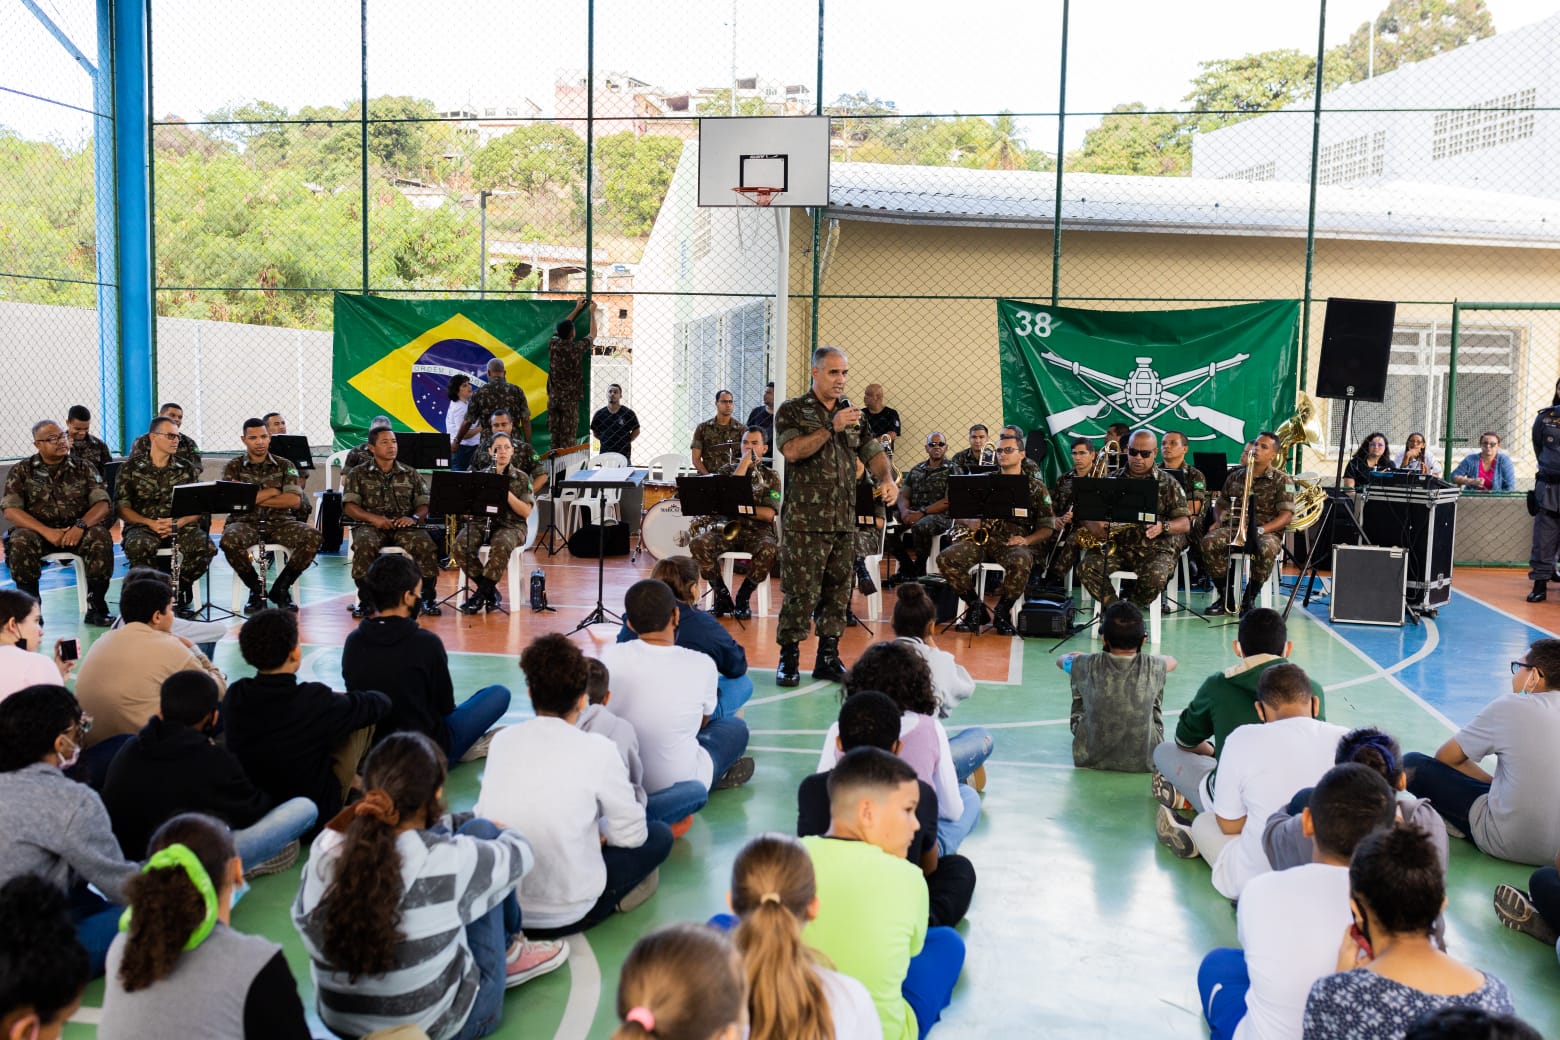 Banda na Escola: alunos da Emef Cel PM Orlady Rocha Filho tiveram manhã musical com Banda do 38º Batalhão de Infantaria do Exército